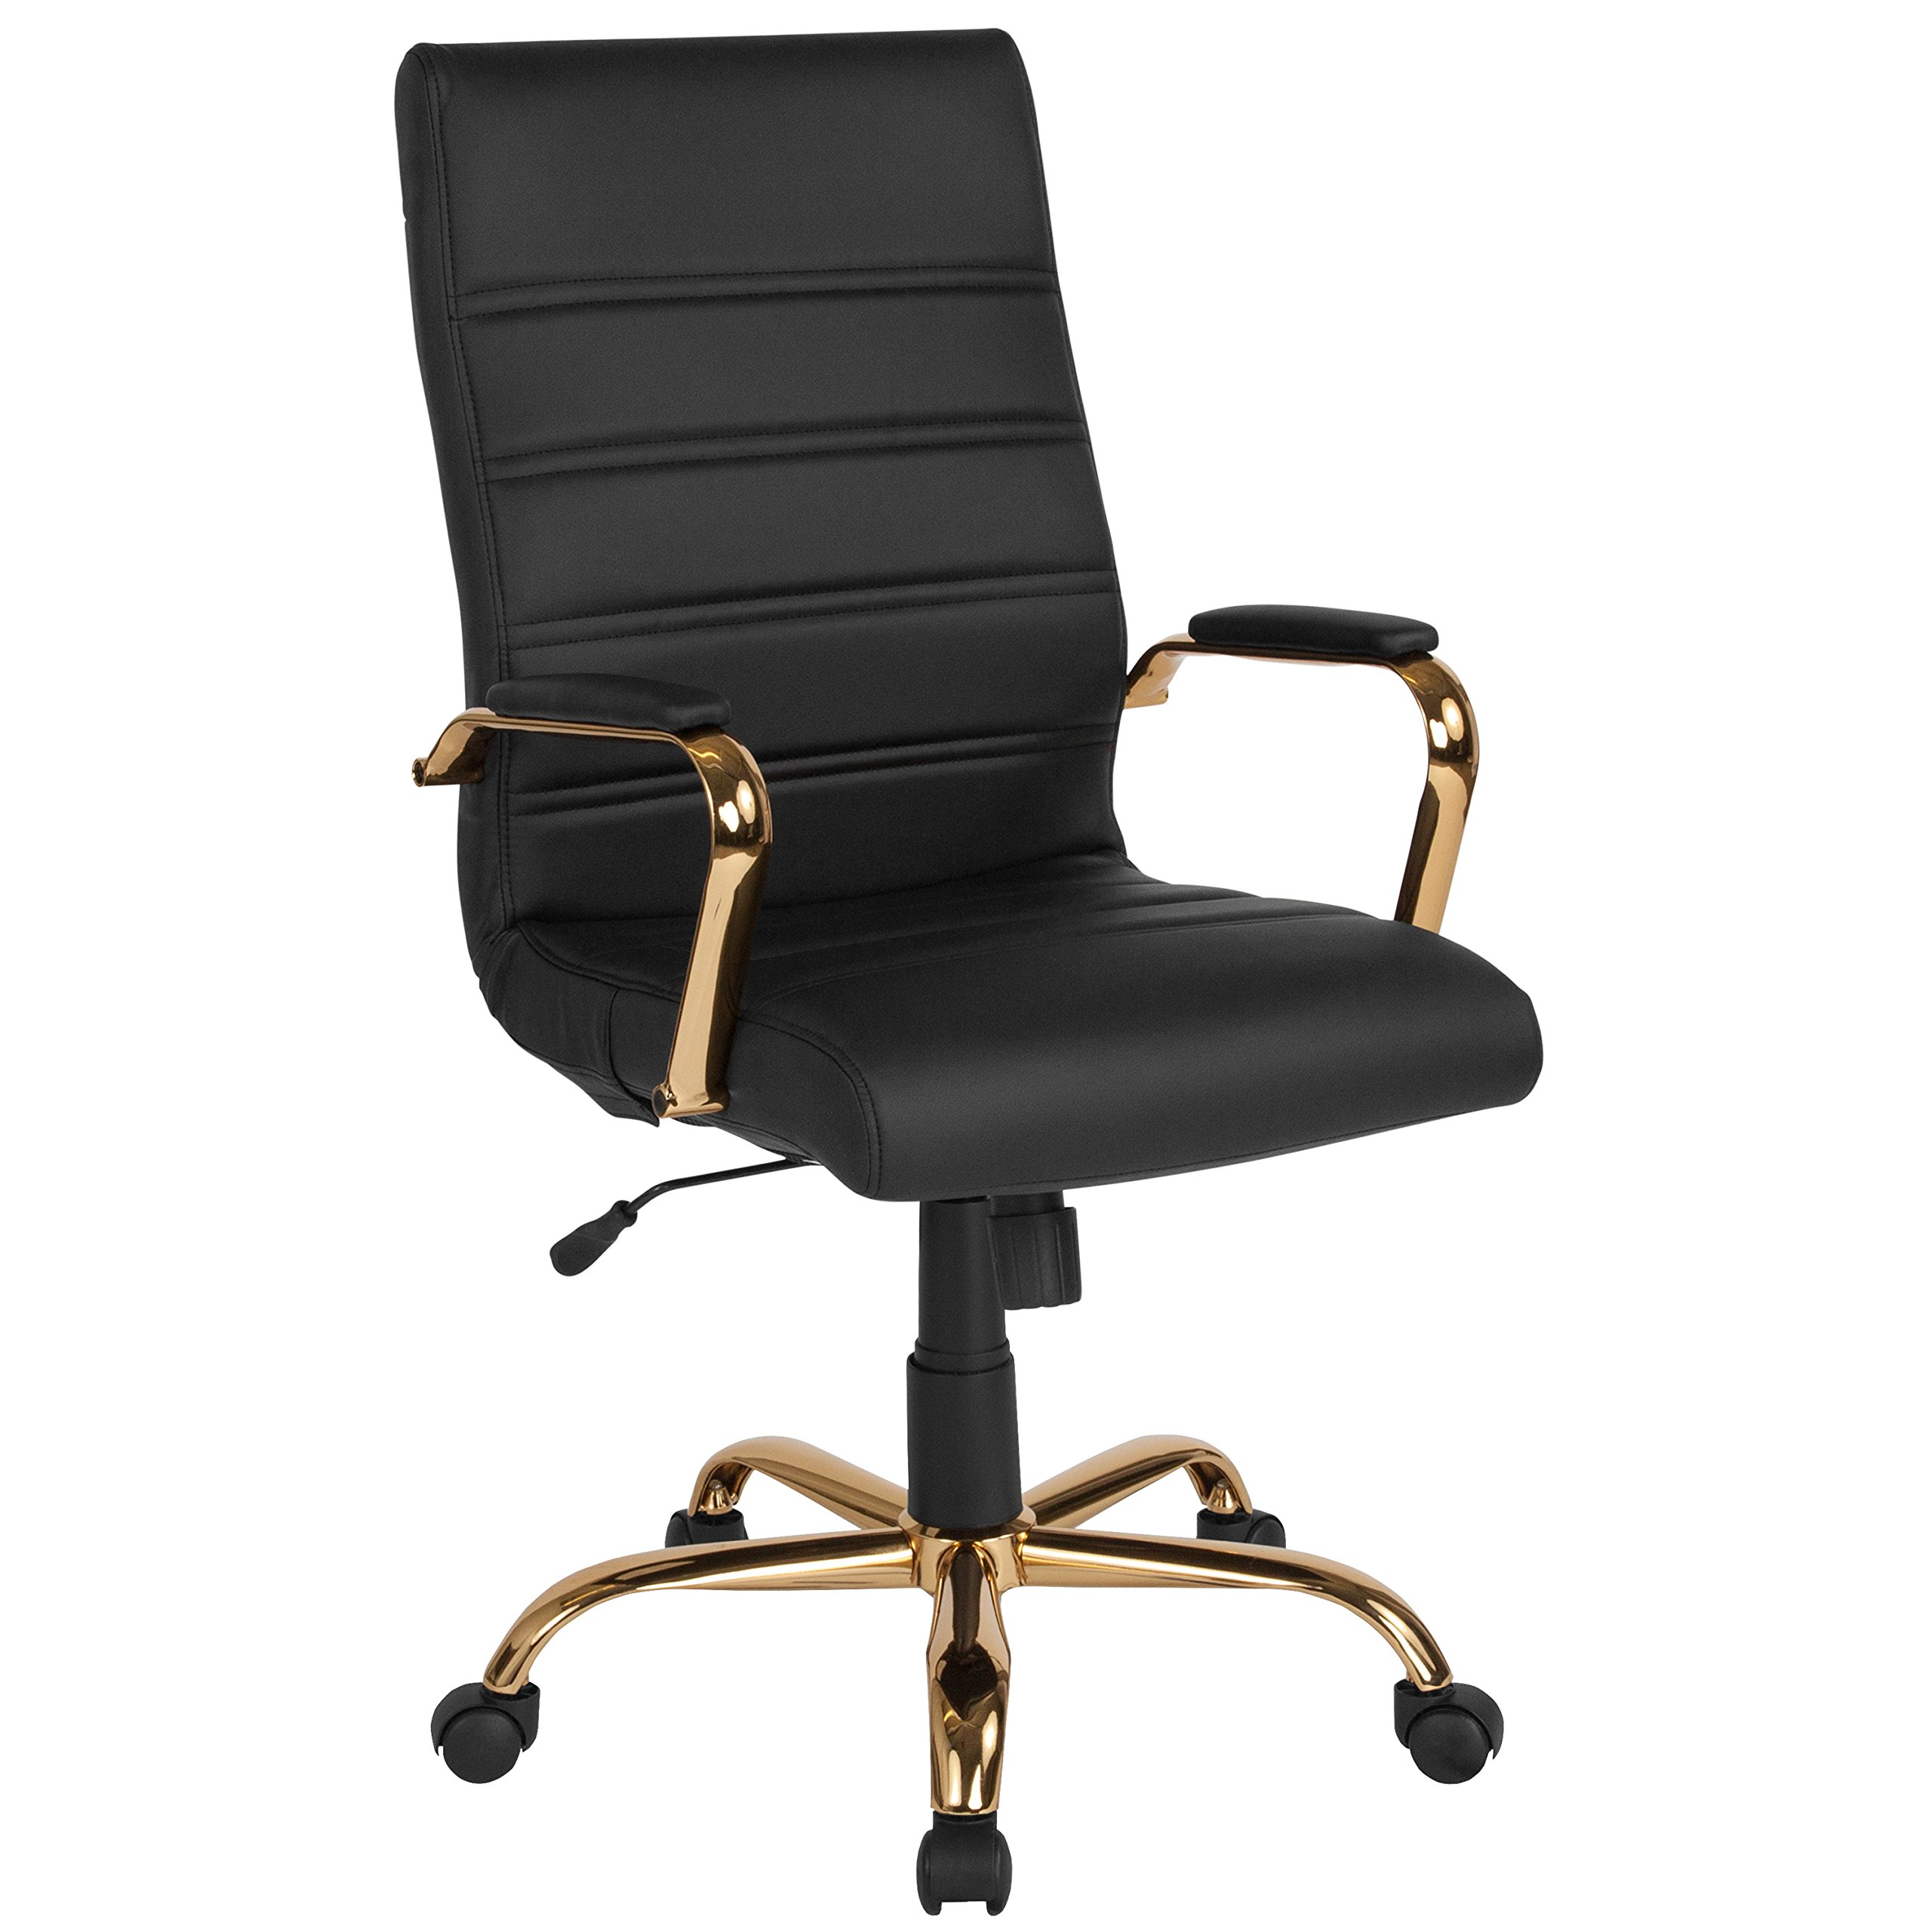 Flash Furniture Silla de escritorio con respaldo alto - Silla de oficina giratoria ejecutiva de cuero negro suave con marco dorado - Sillón giratorio